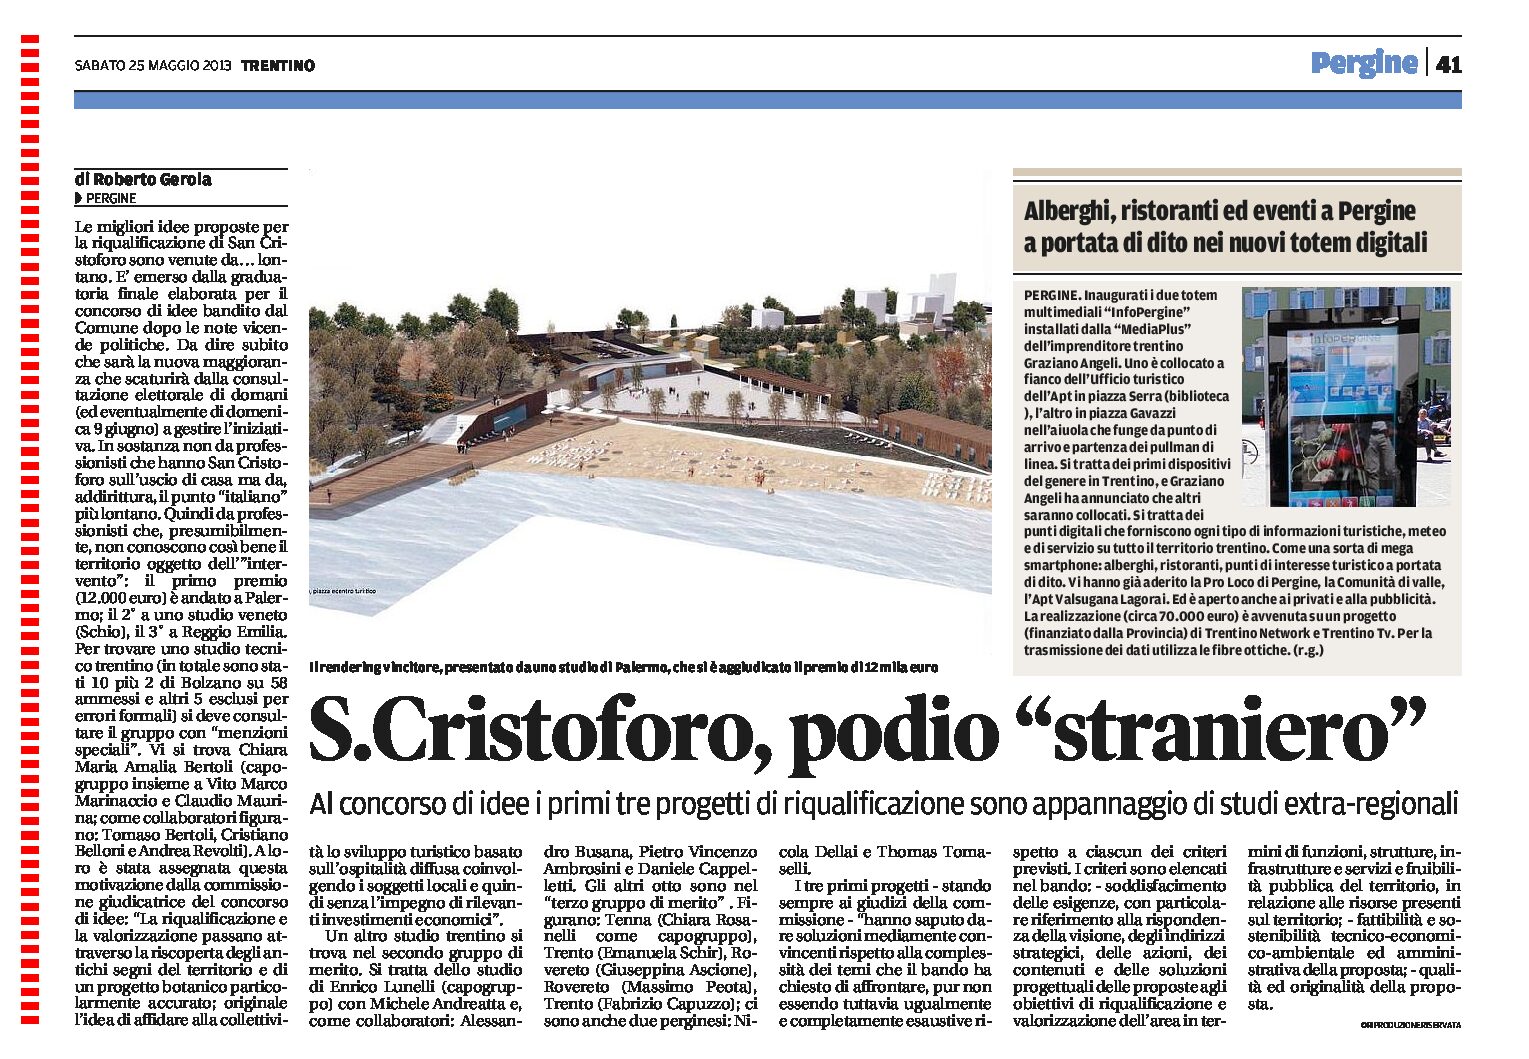 S. Cristoforo: podio “straniero”. I primi 3 progetti sono di studi fuori regione.